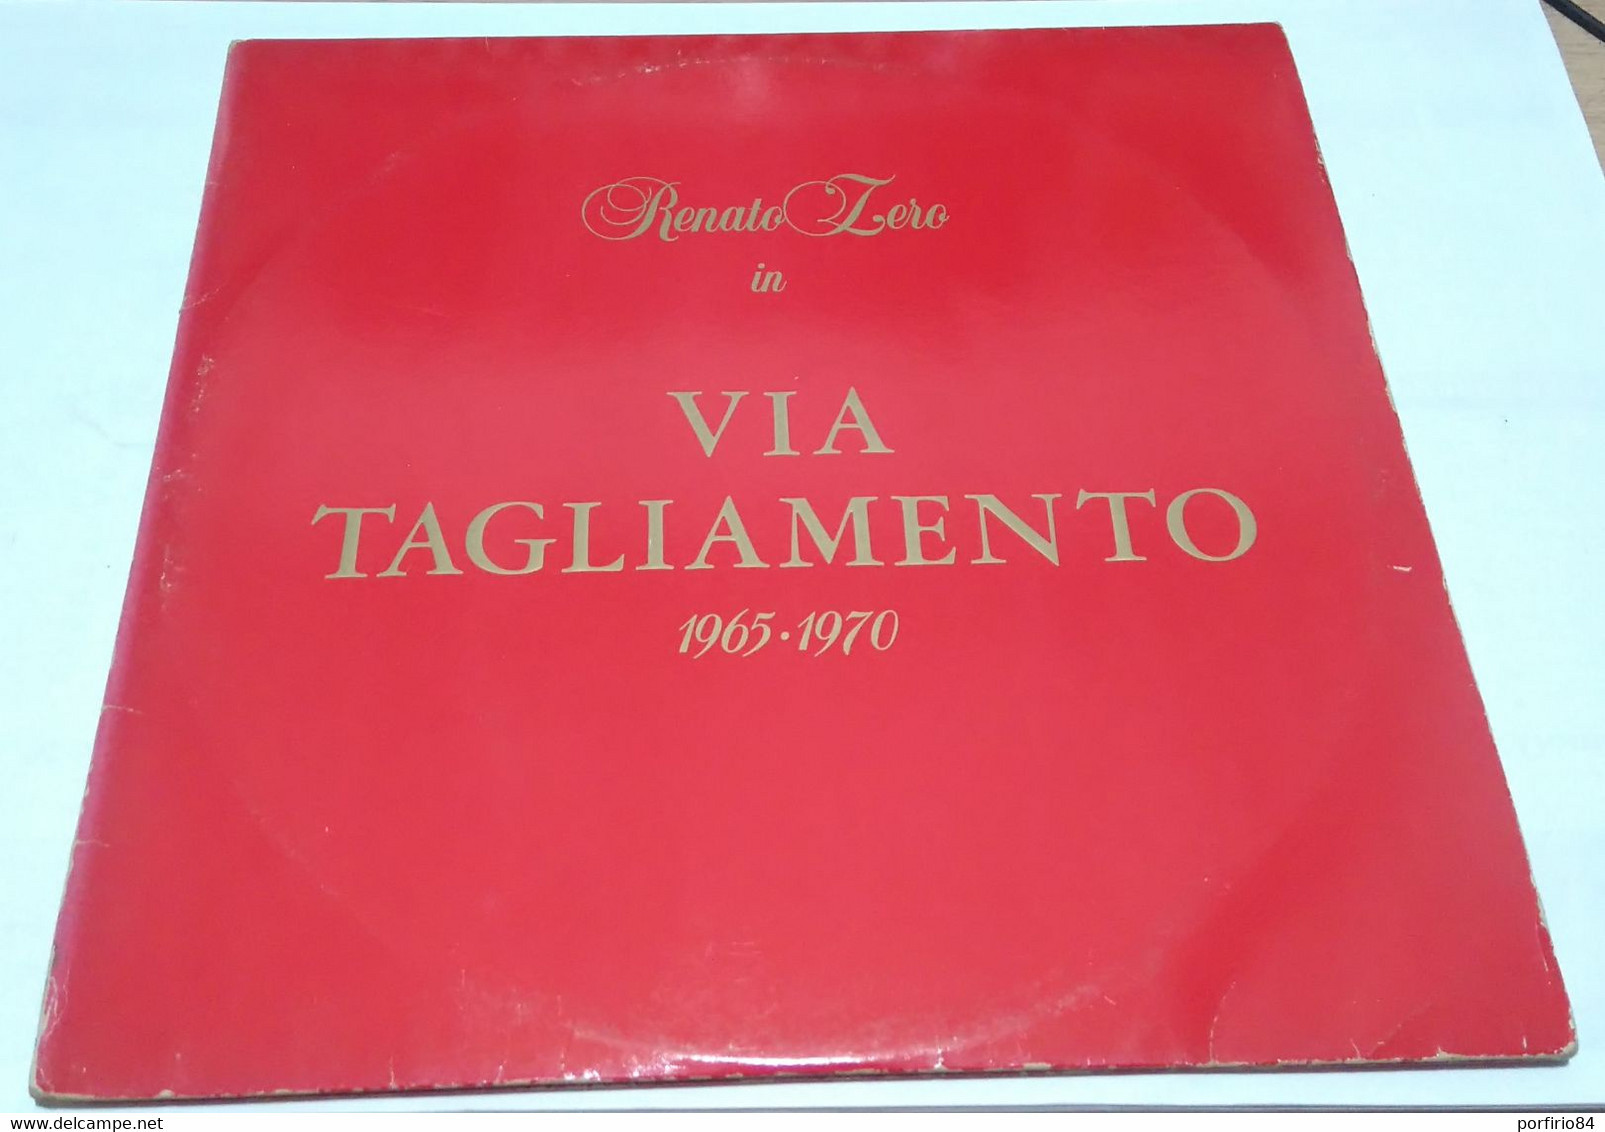 RENATO ZERO 2 LP VIA TAGLIAMENTO 1965 - 1970 ORIGINALE ANNO 1982 - Other - Italian Music